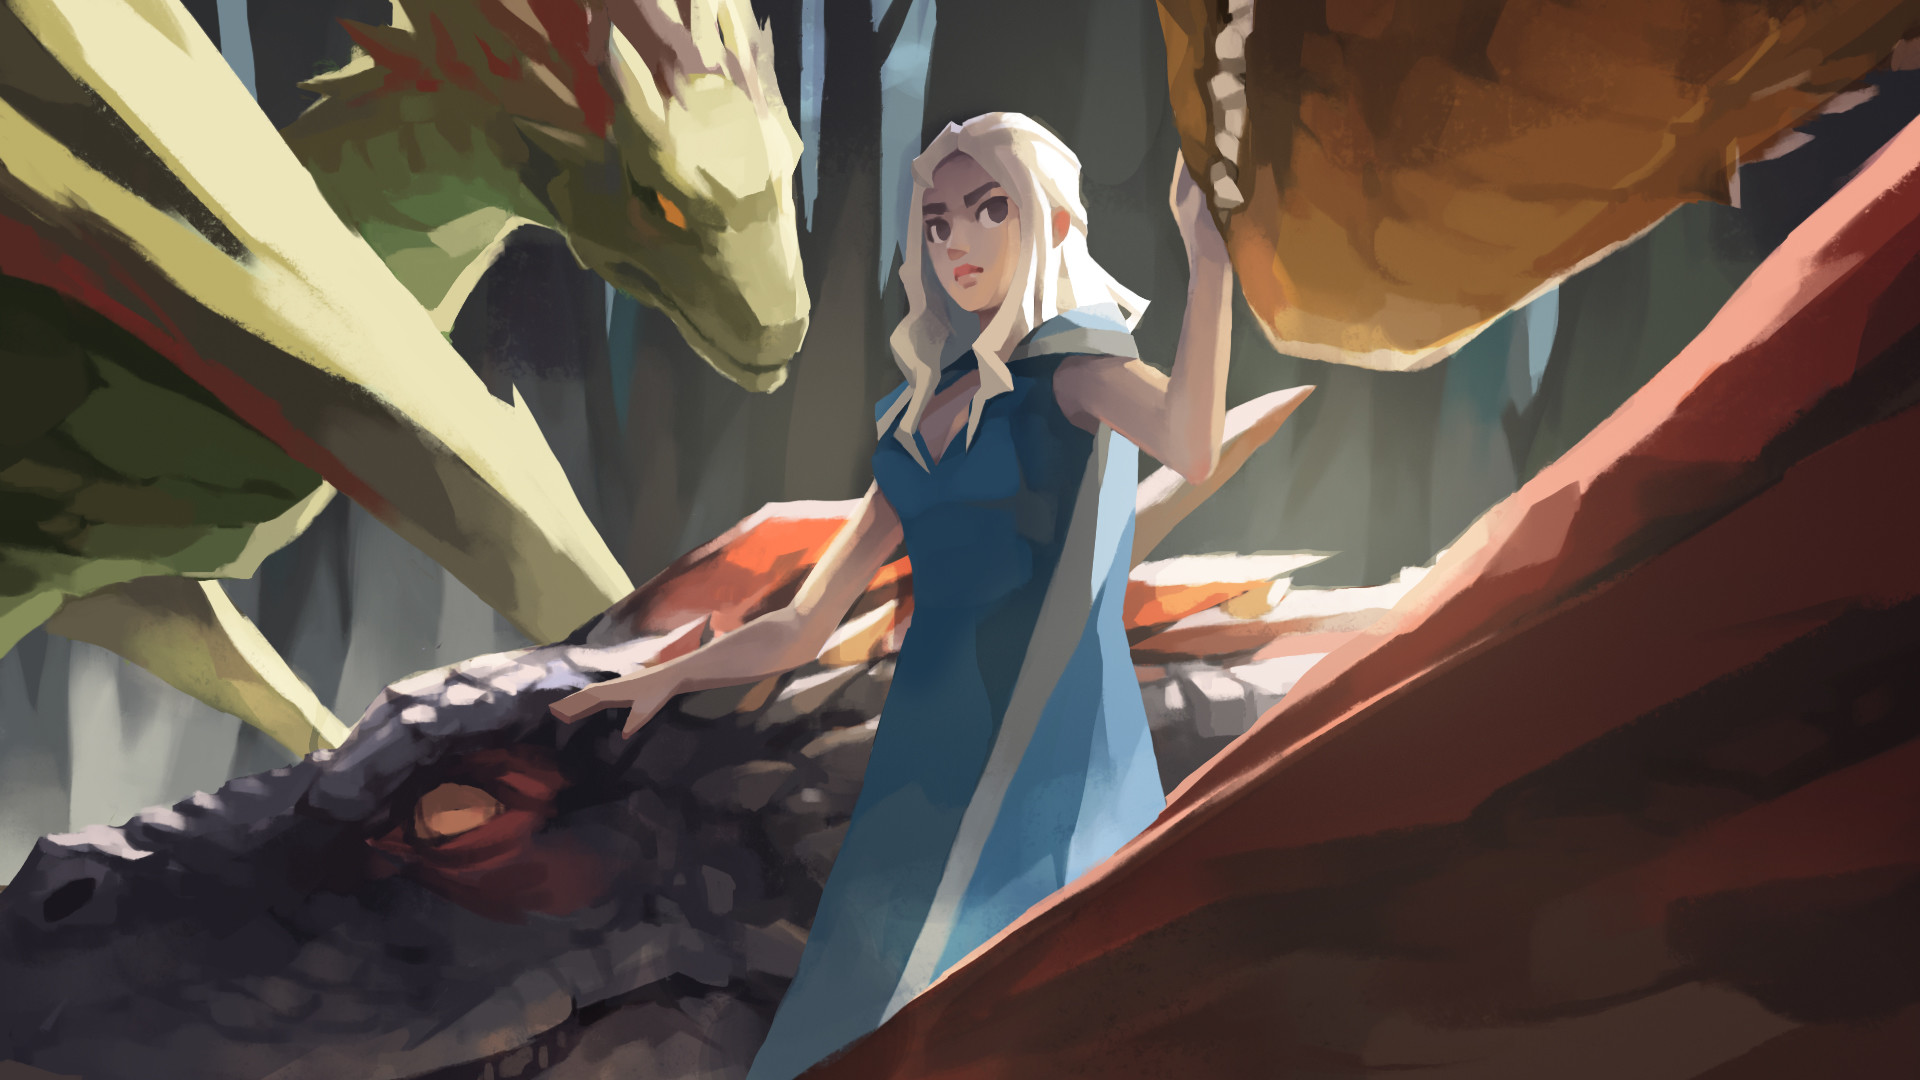 Free download wallpaper Game Of Thrones, Dragon, Tv Show, Daenerys Targaryen on your PC desktop